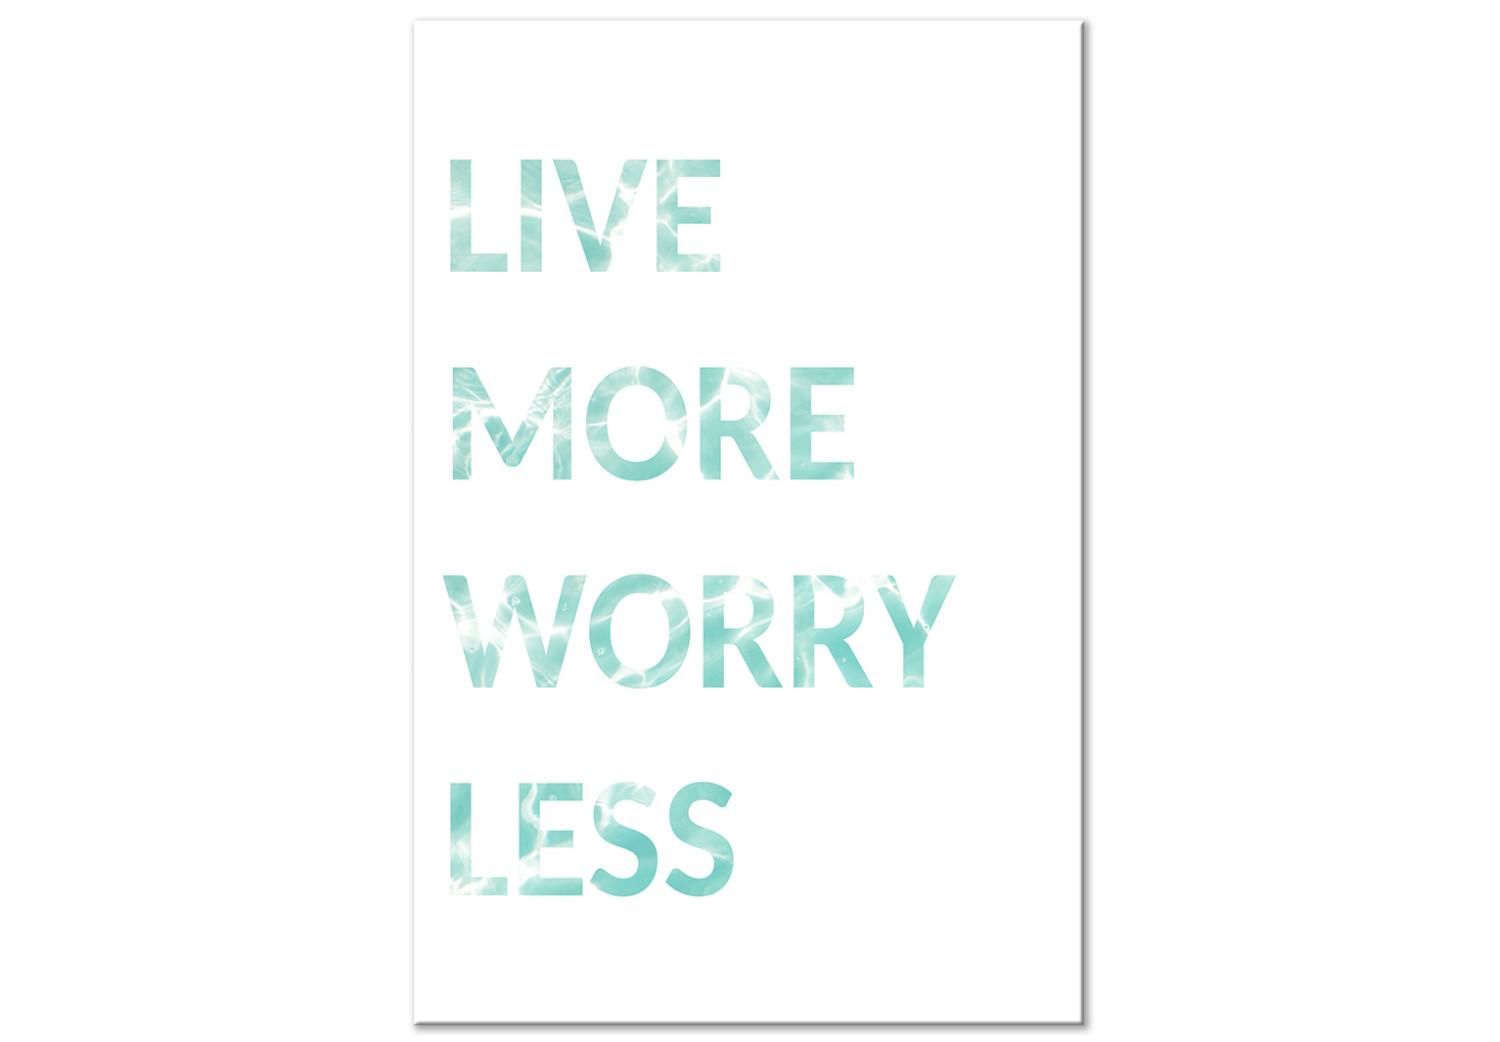 Cuadro moderno Subtítulo en inglés Live more worry less - sobre fondo blanco